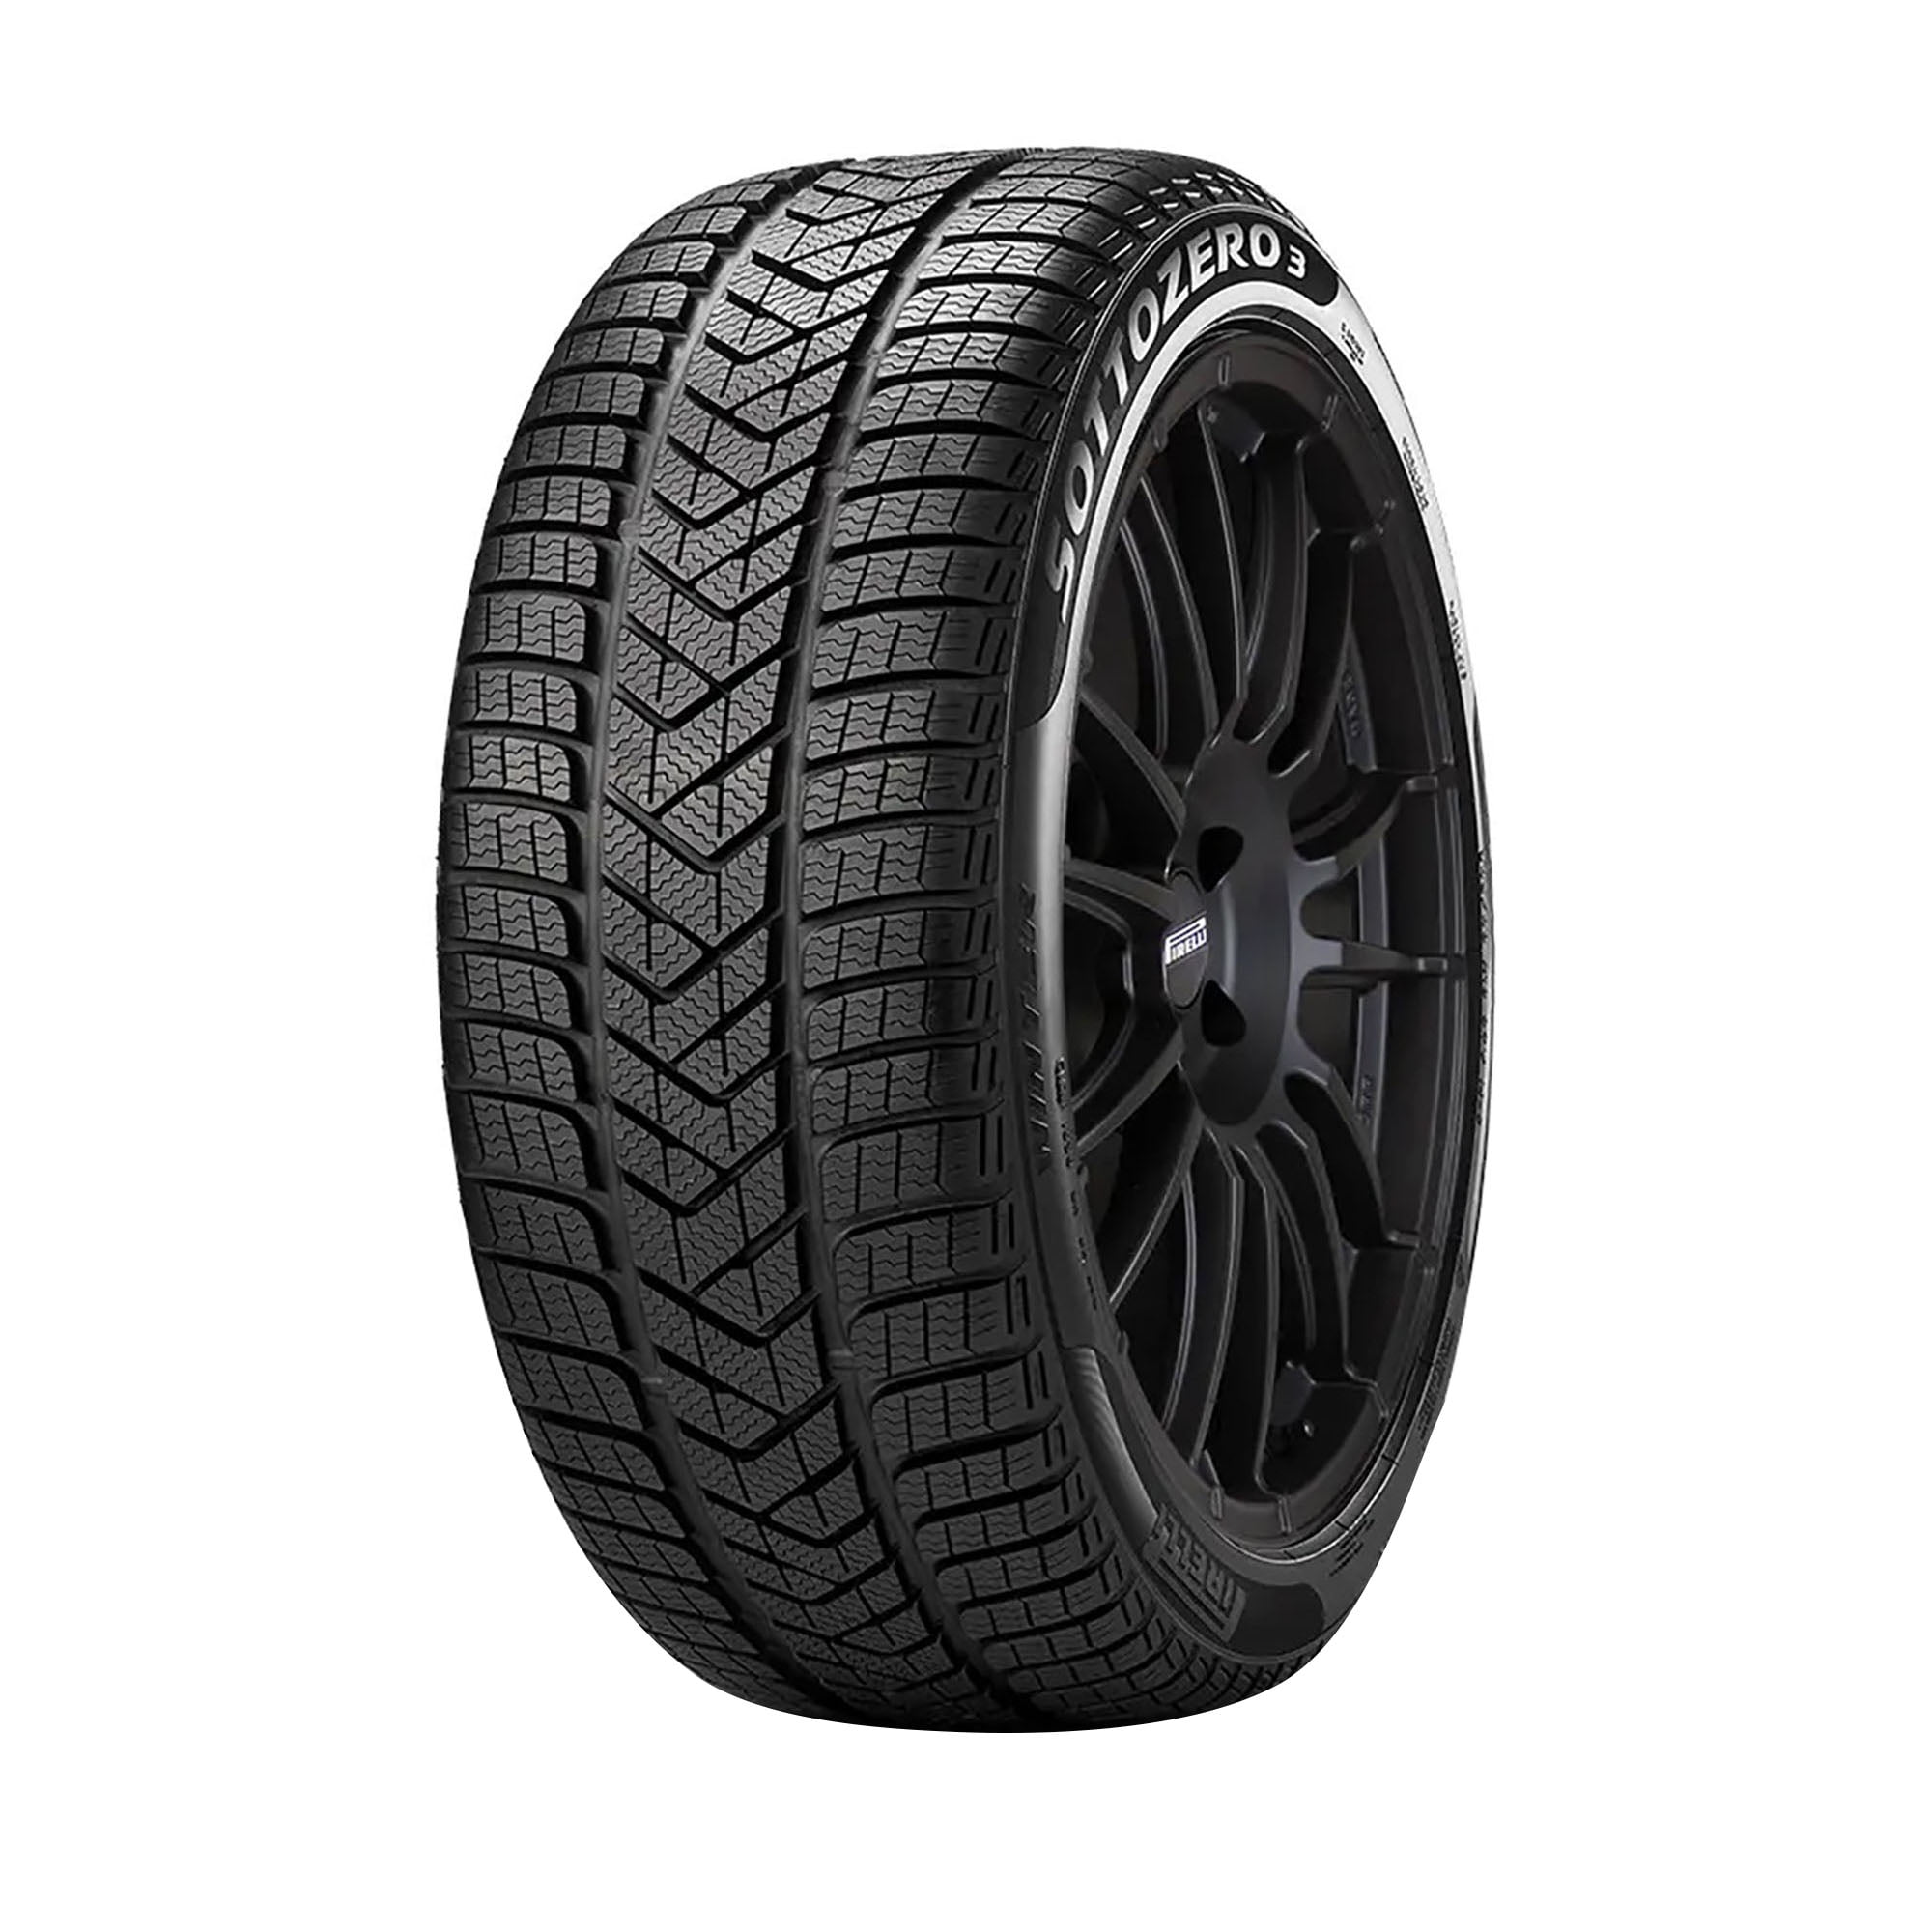 Pirelli Winter Sottozero 3 275/35R21 XL 103W Passenger Winter Tire